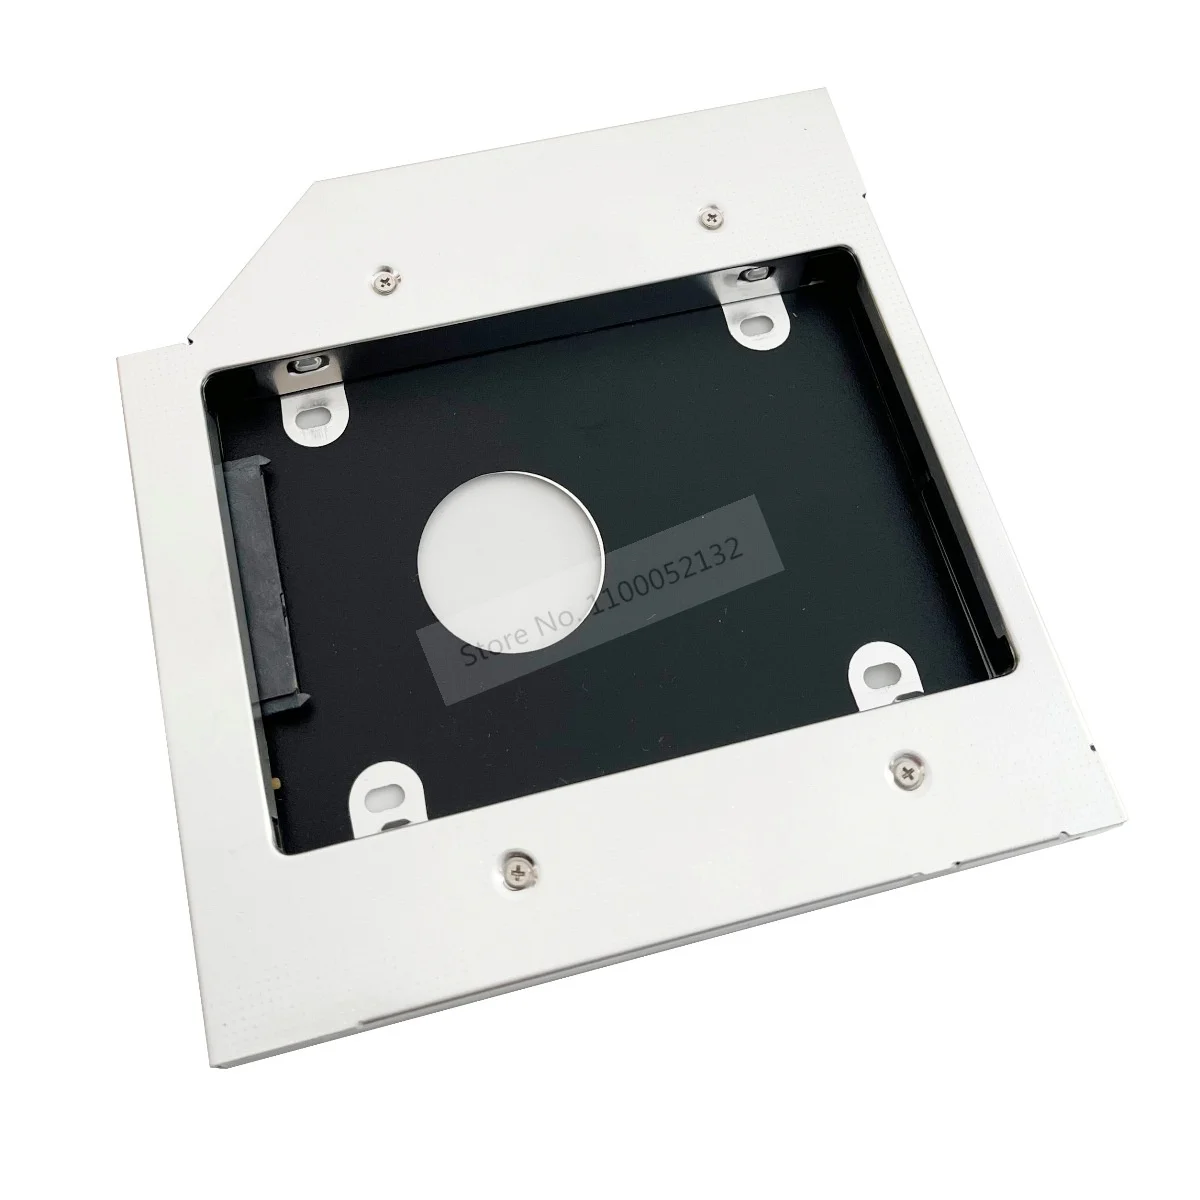 Aluminum 2nd Hard Drive HDD SSD Case Enclosure Optical bay Caddy Frame 12.7mm SATA for HP Pavilion G7-1310us G6-1001er G7-2275dx